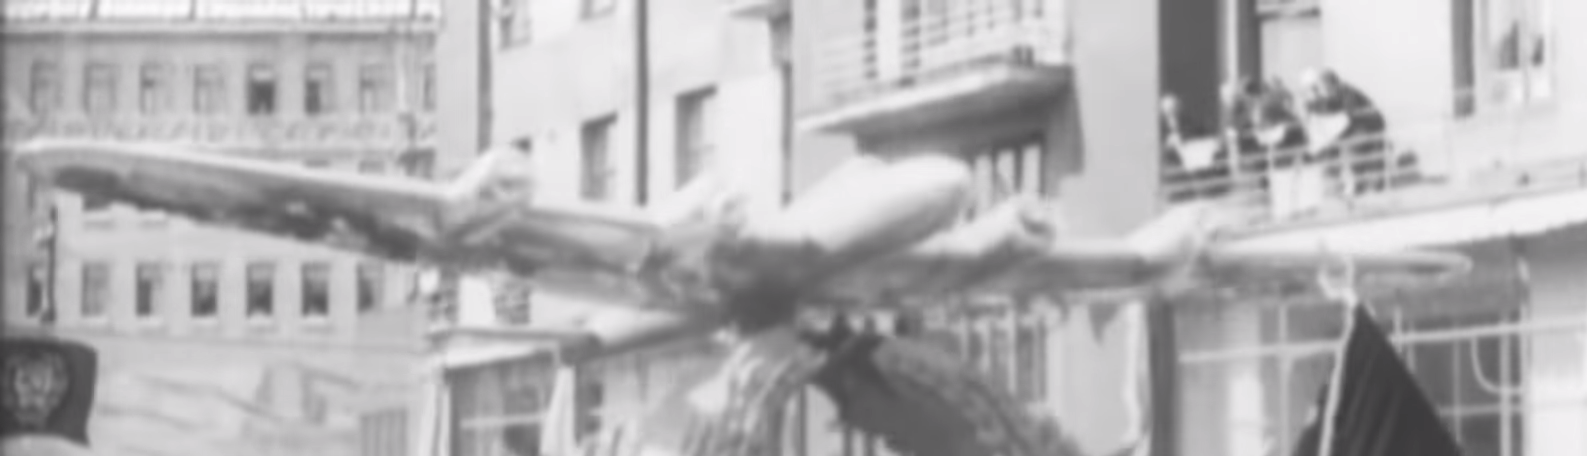 Макет самолёта 1 мая 1936.PNG